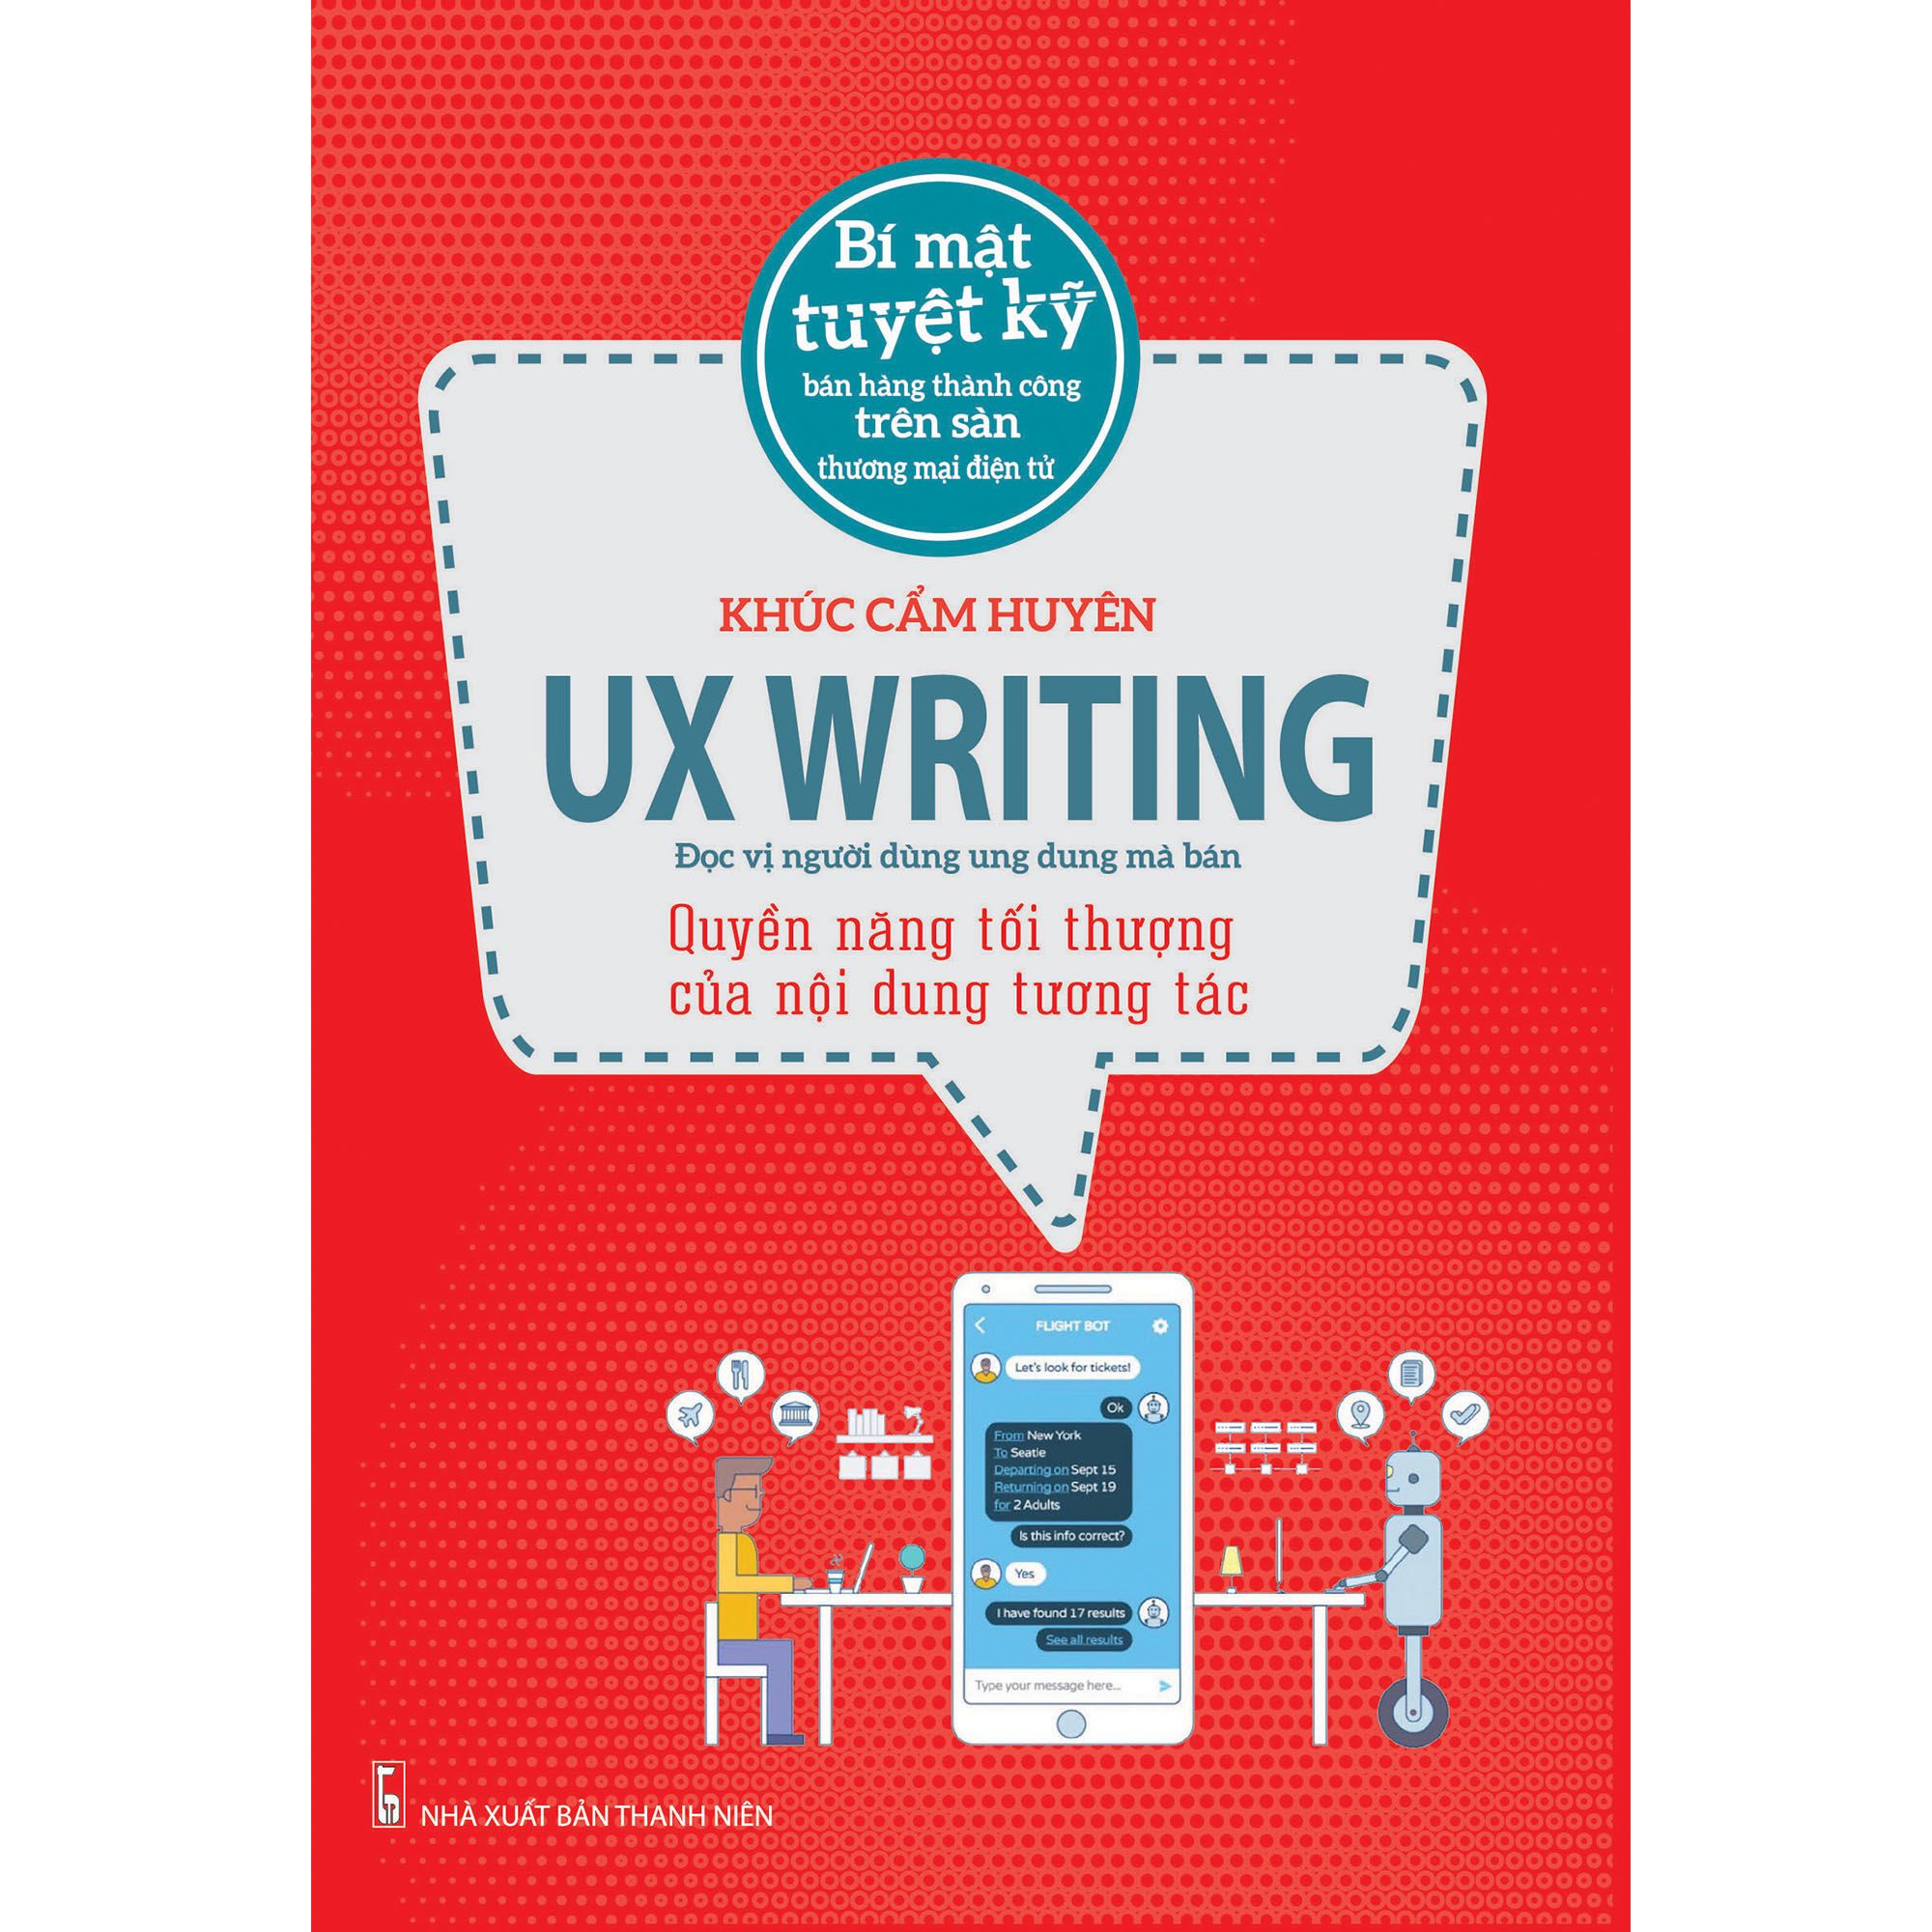 UX Writing - Quyền năng tối thượng của nội dung tương tác